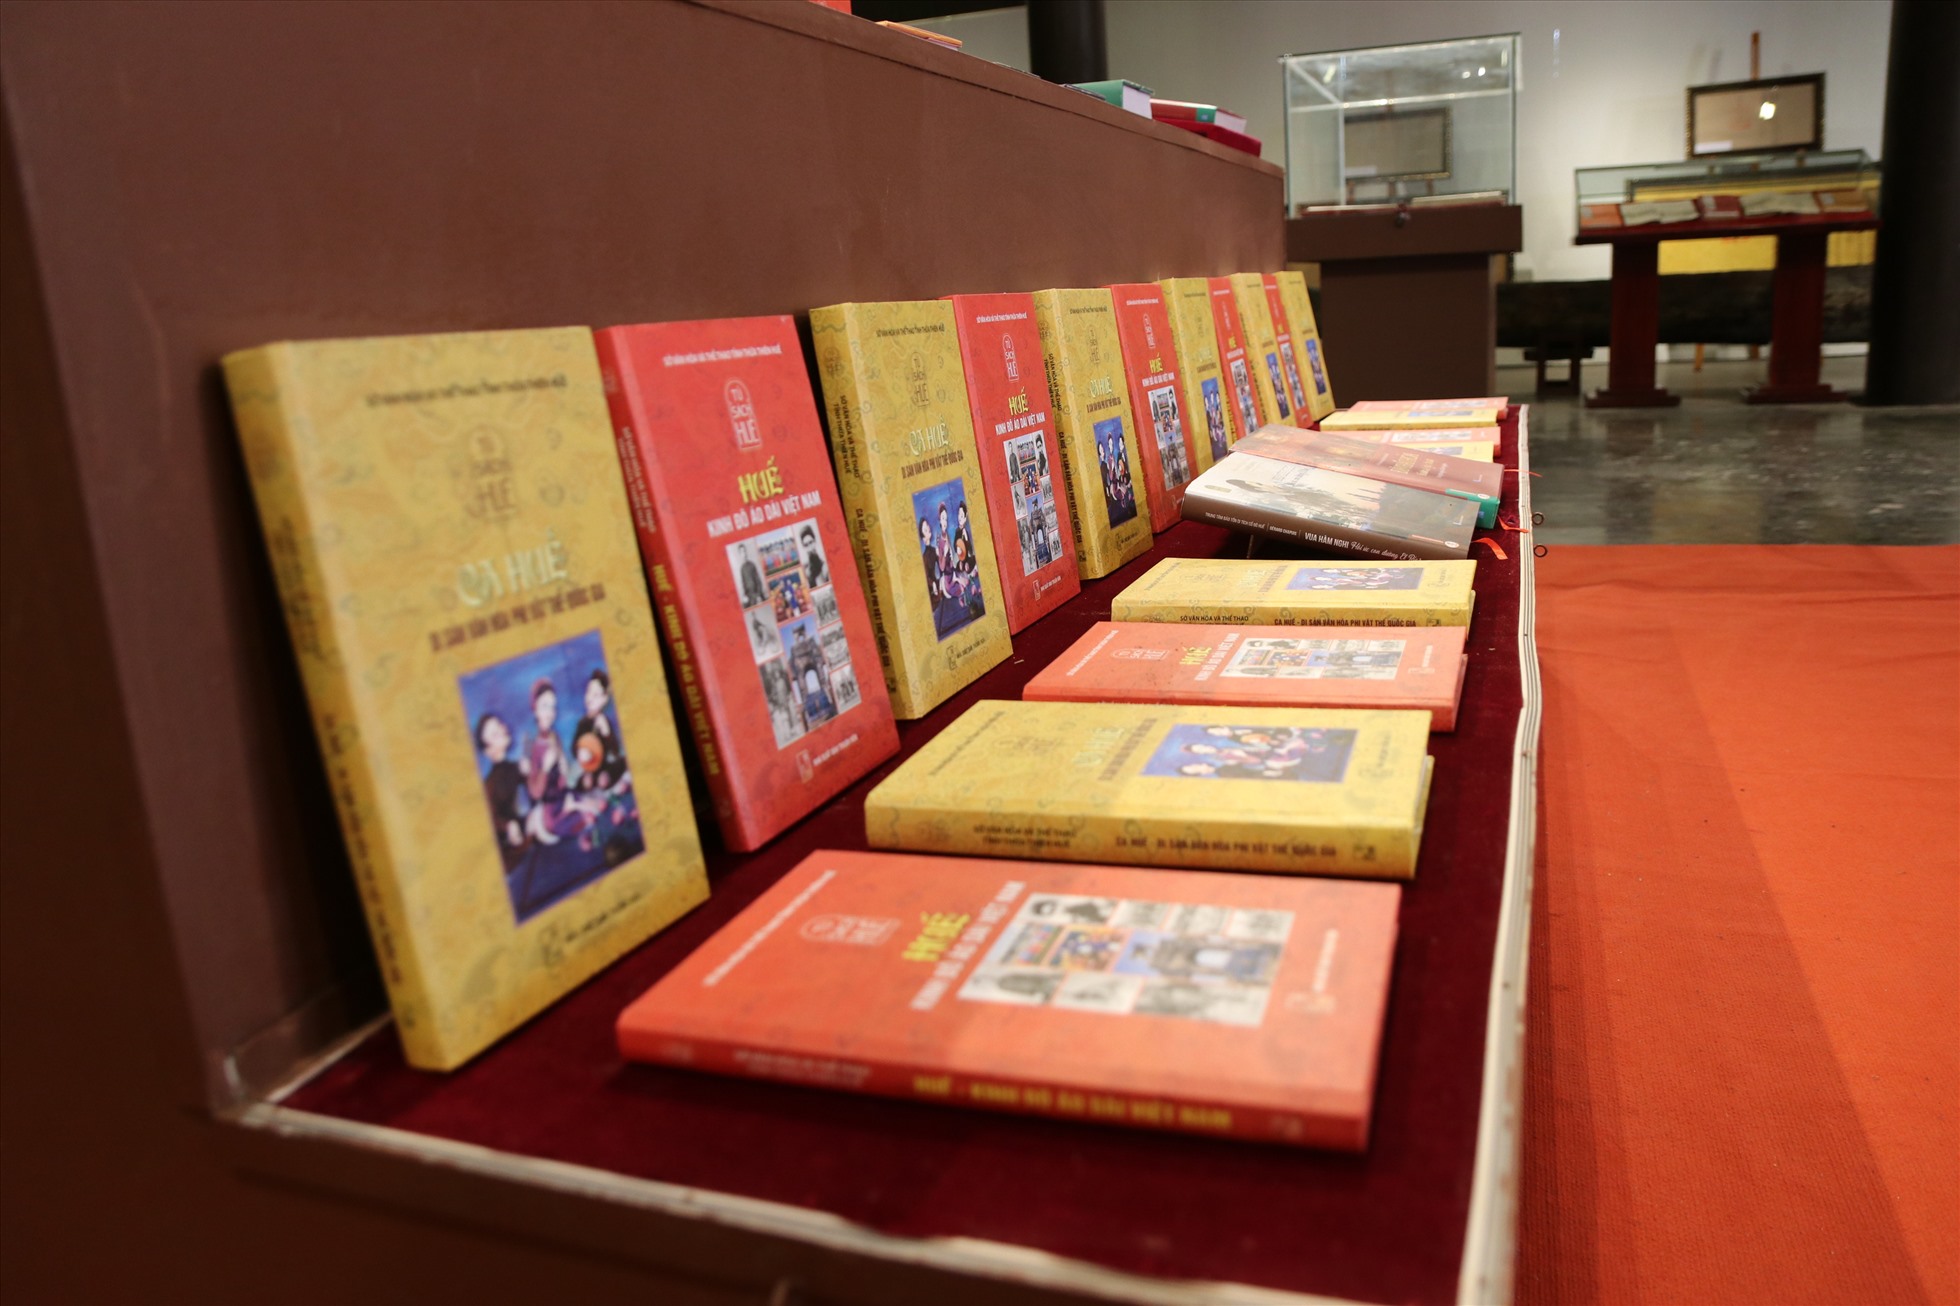 Năm nay, Ngày sách và Văn hóa đọc Việt Nam được diễn ra trong 5 ngày, từ ngày 21/4 đến ngày 25/4, do Ban Tuyên giáo Trung ương, Bộ Thông tin và Truyền thông, Bộ Văn hóa, Thể thao và Du lịch, Hội Xuất bản Việt Nam tổ chức.